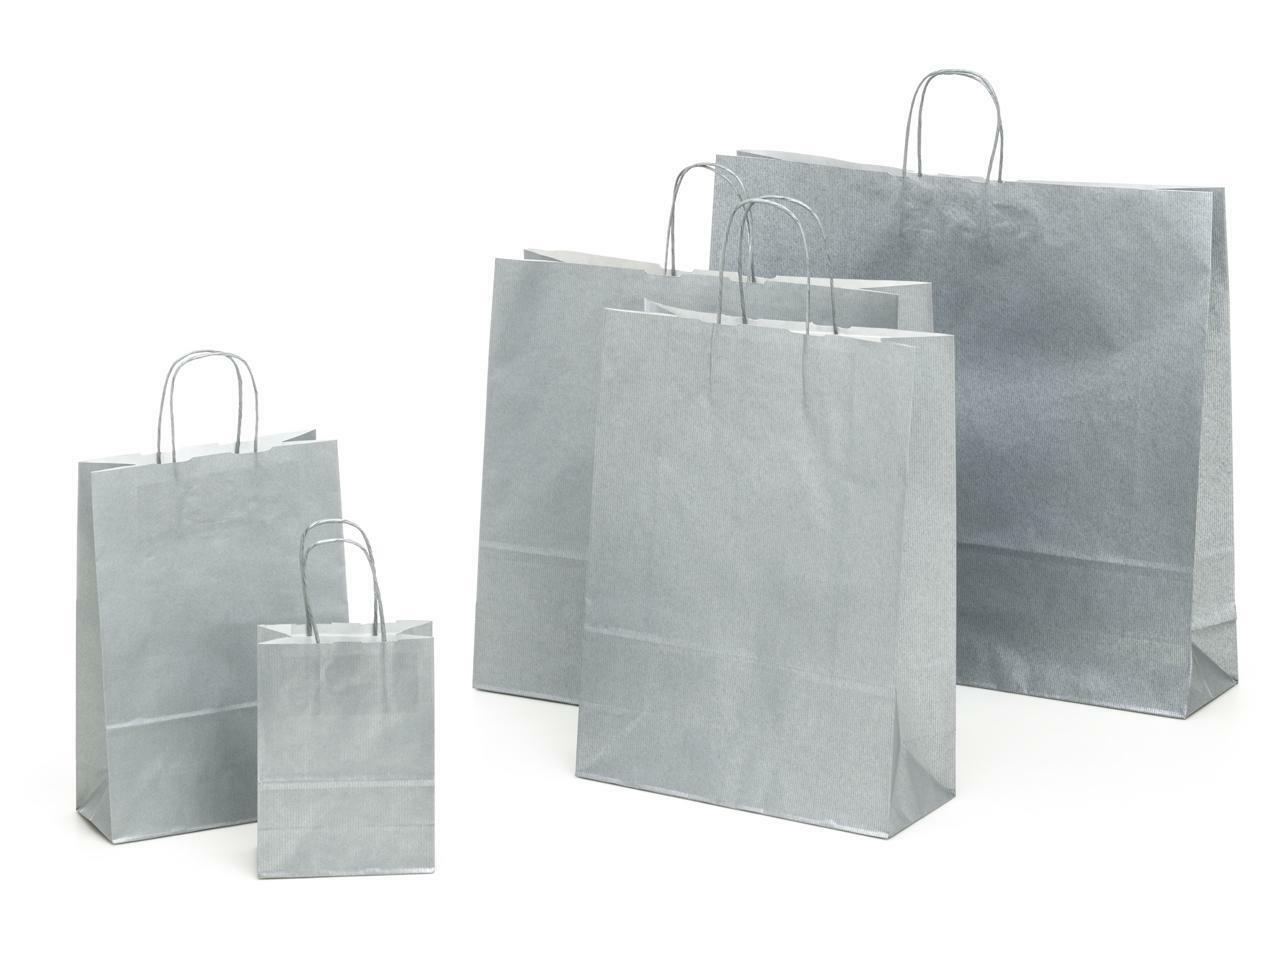  shopper in carta argento con maniglia ritorta - 36 x 12 x 41 cm